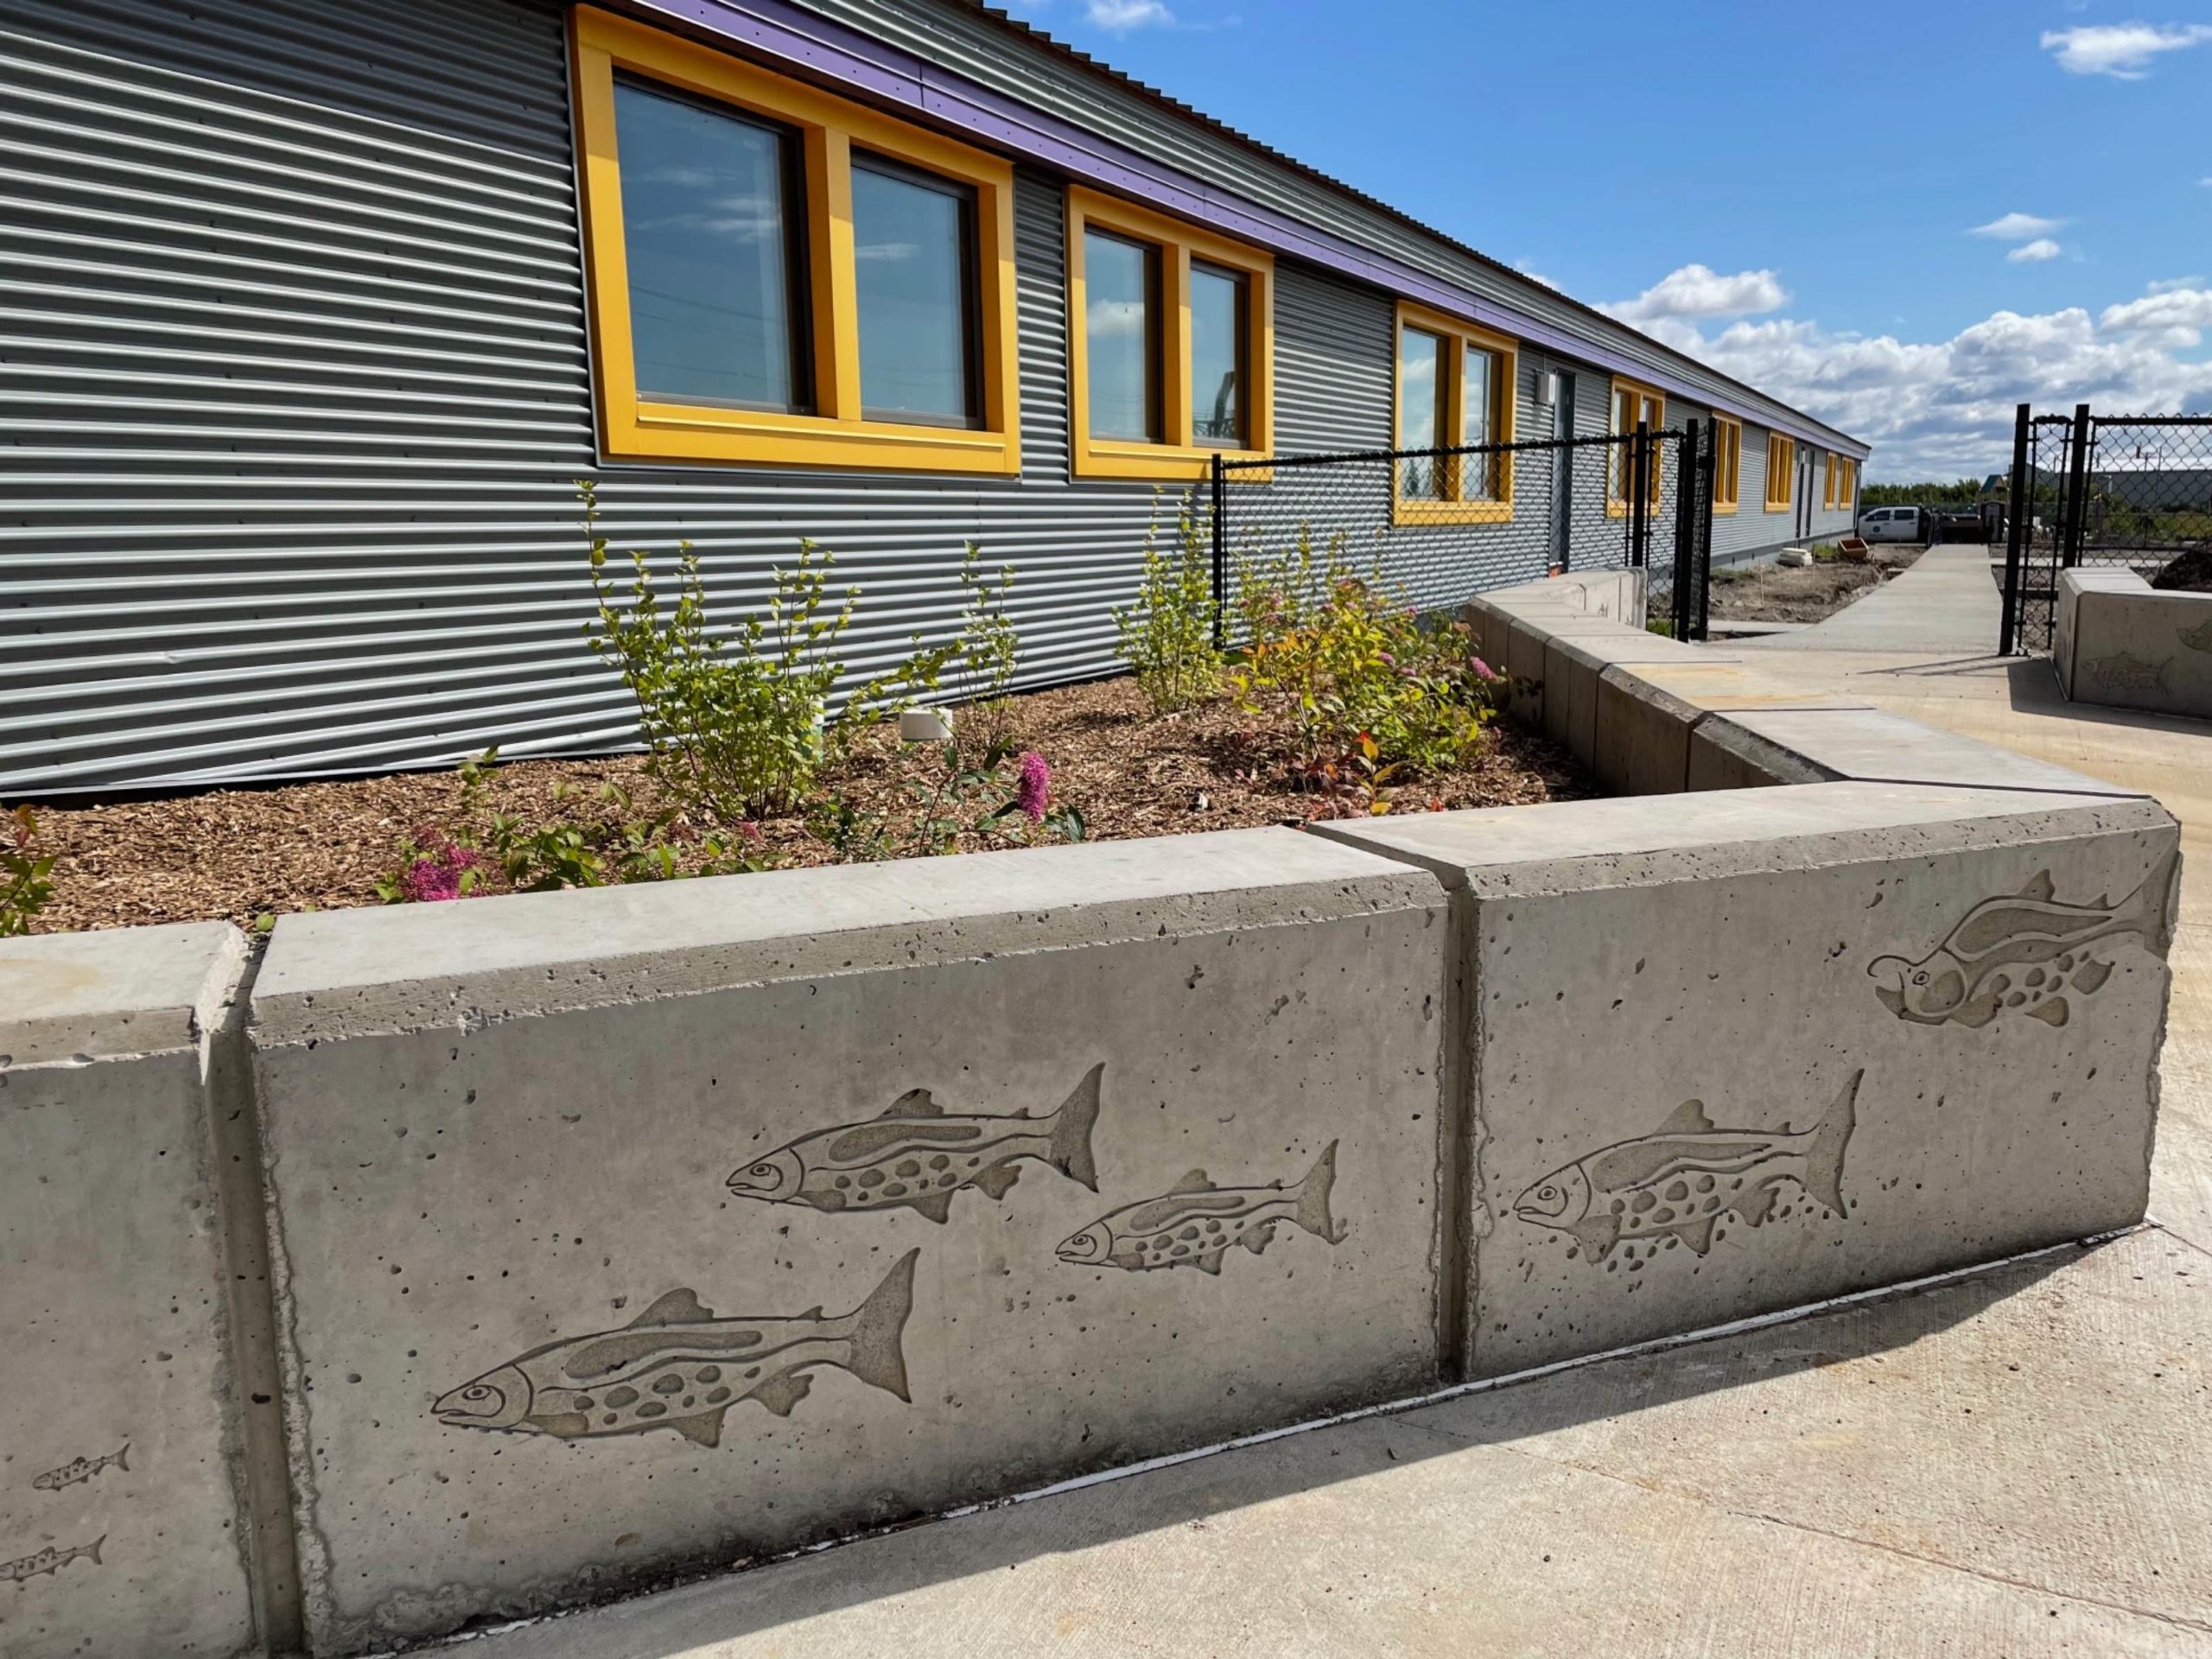 Remote Alaska Landscaping - install for Bristol bay Community school in Naknek.